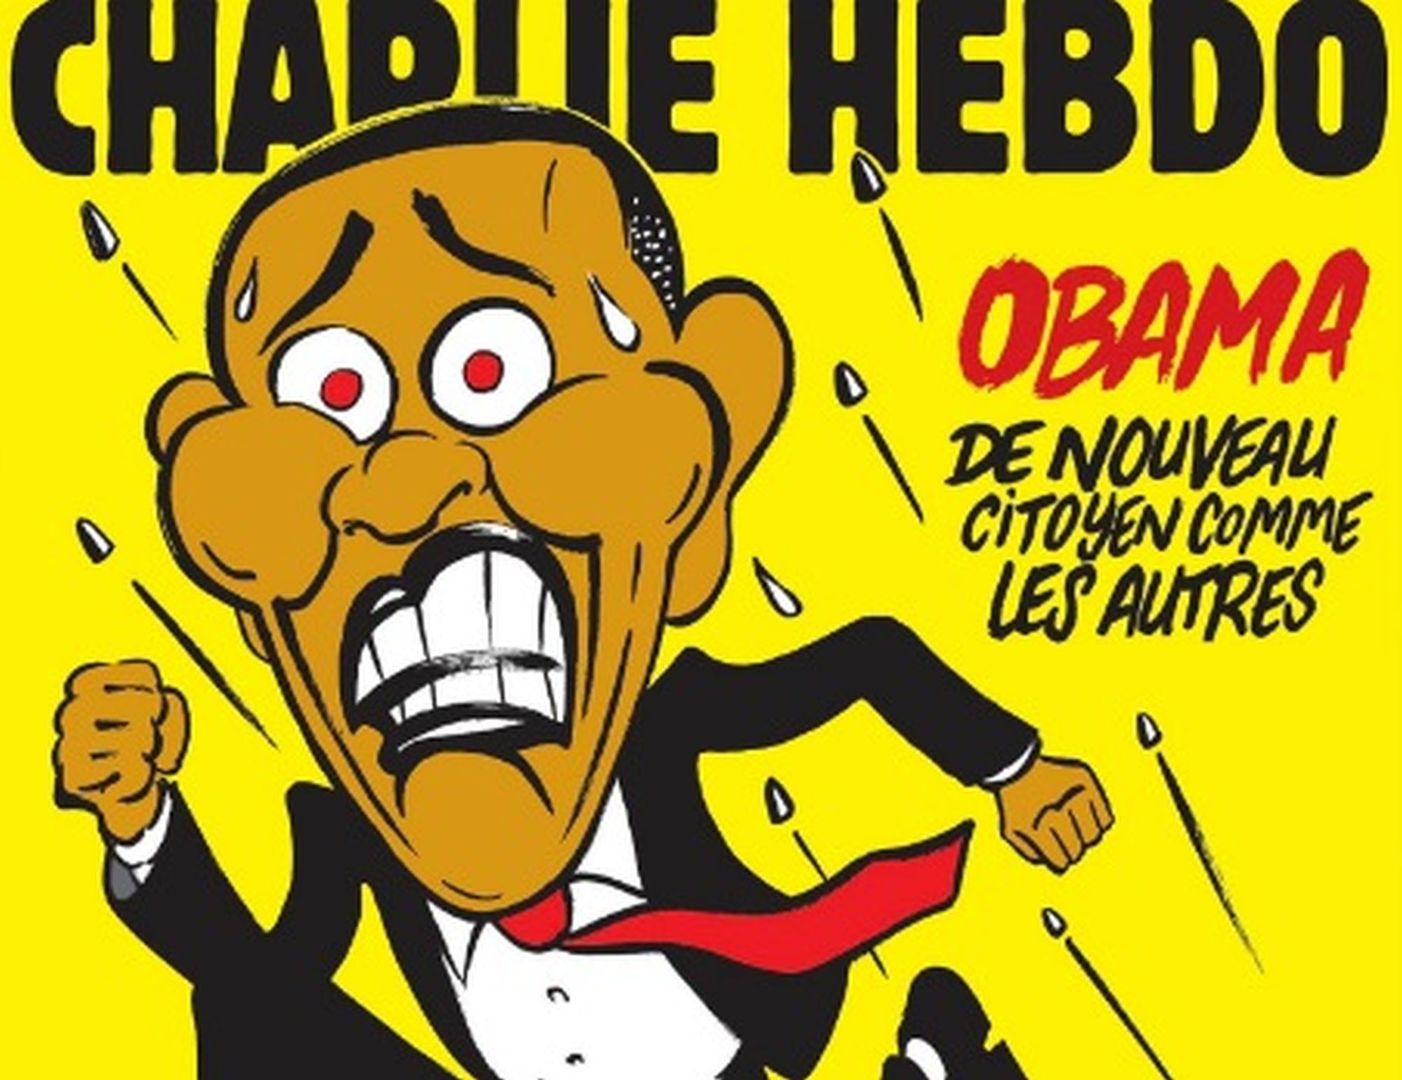 "Charlie Hebdo" skomentował wygraną Trumpa